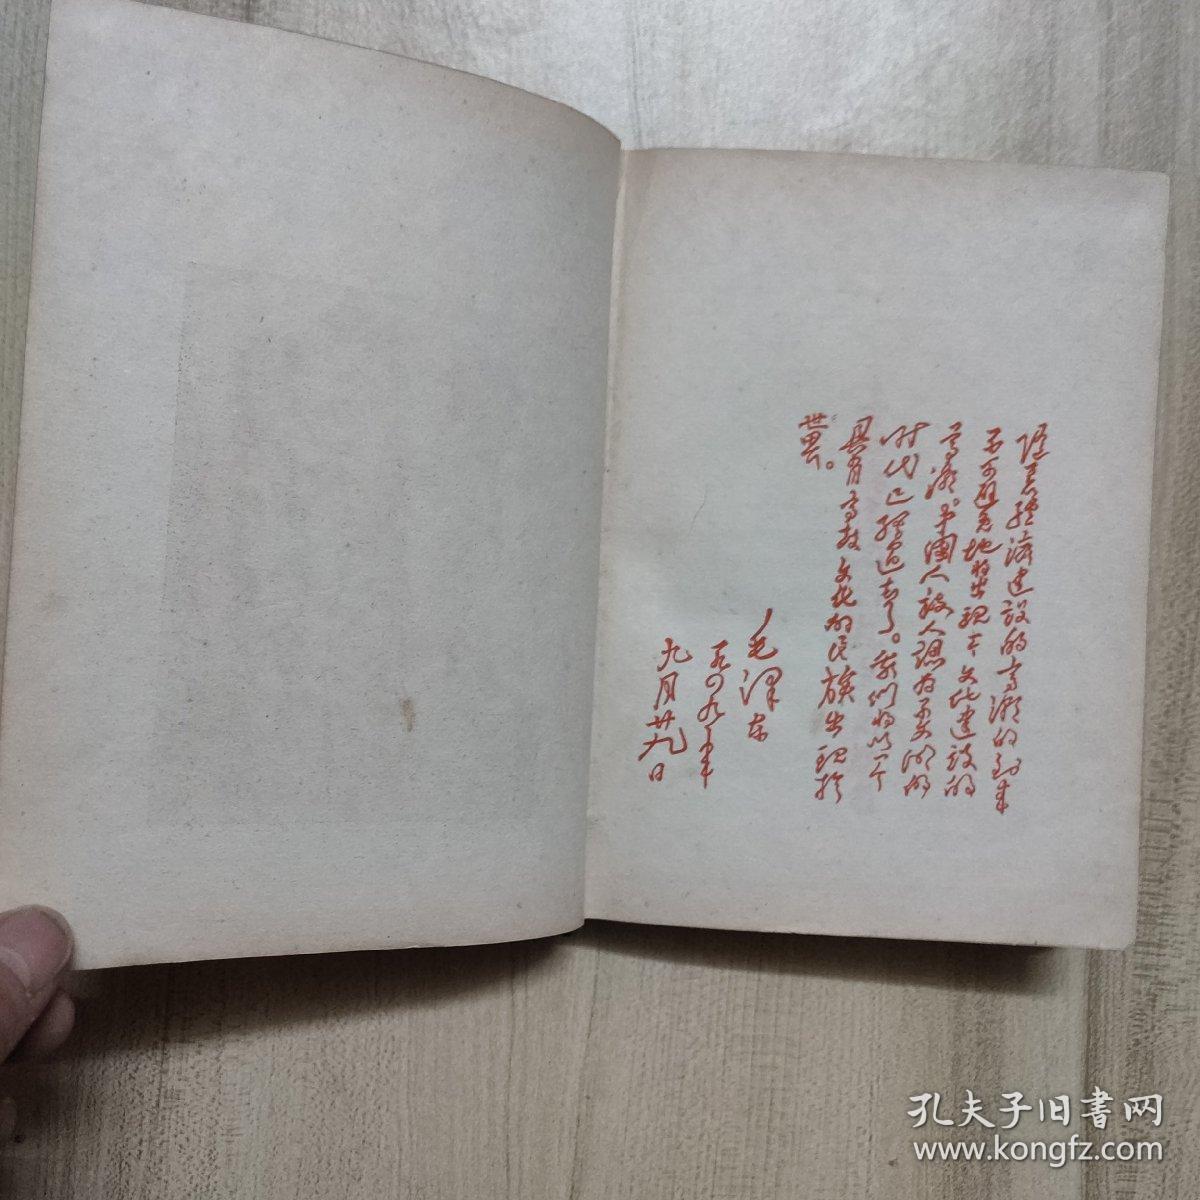 锦州铁路第二届业余文艺检阅大会纪念册